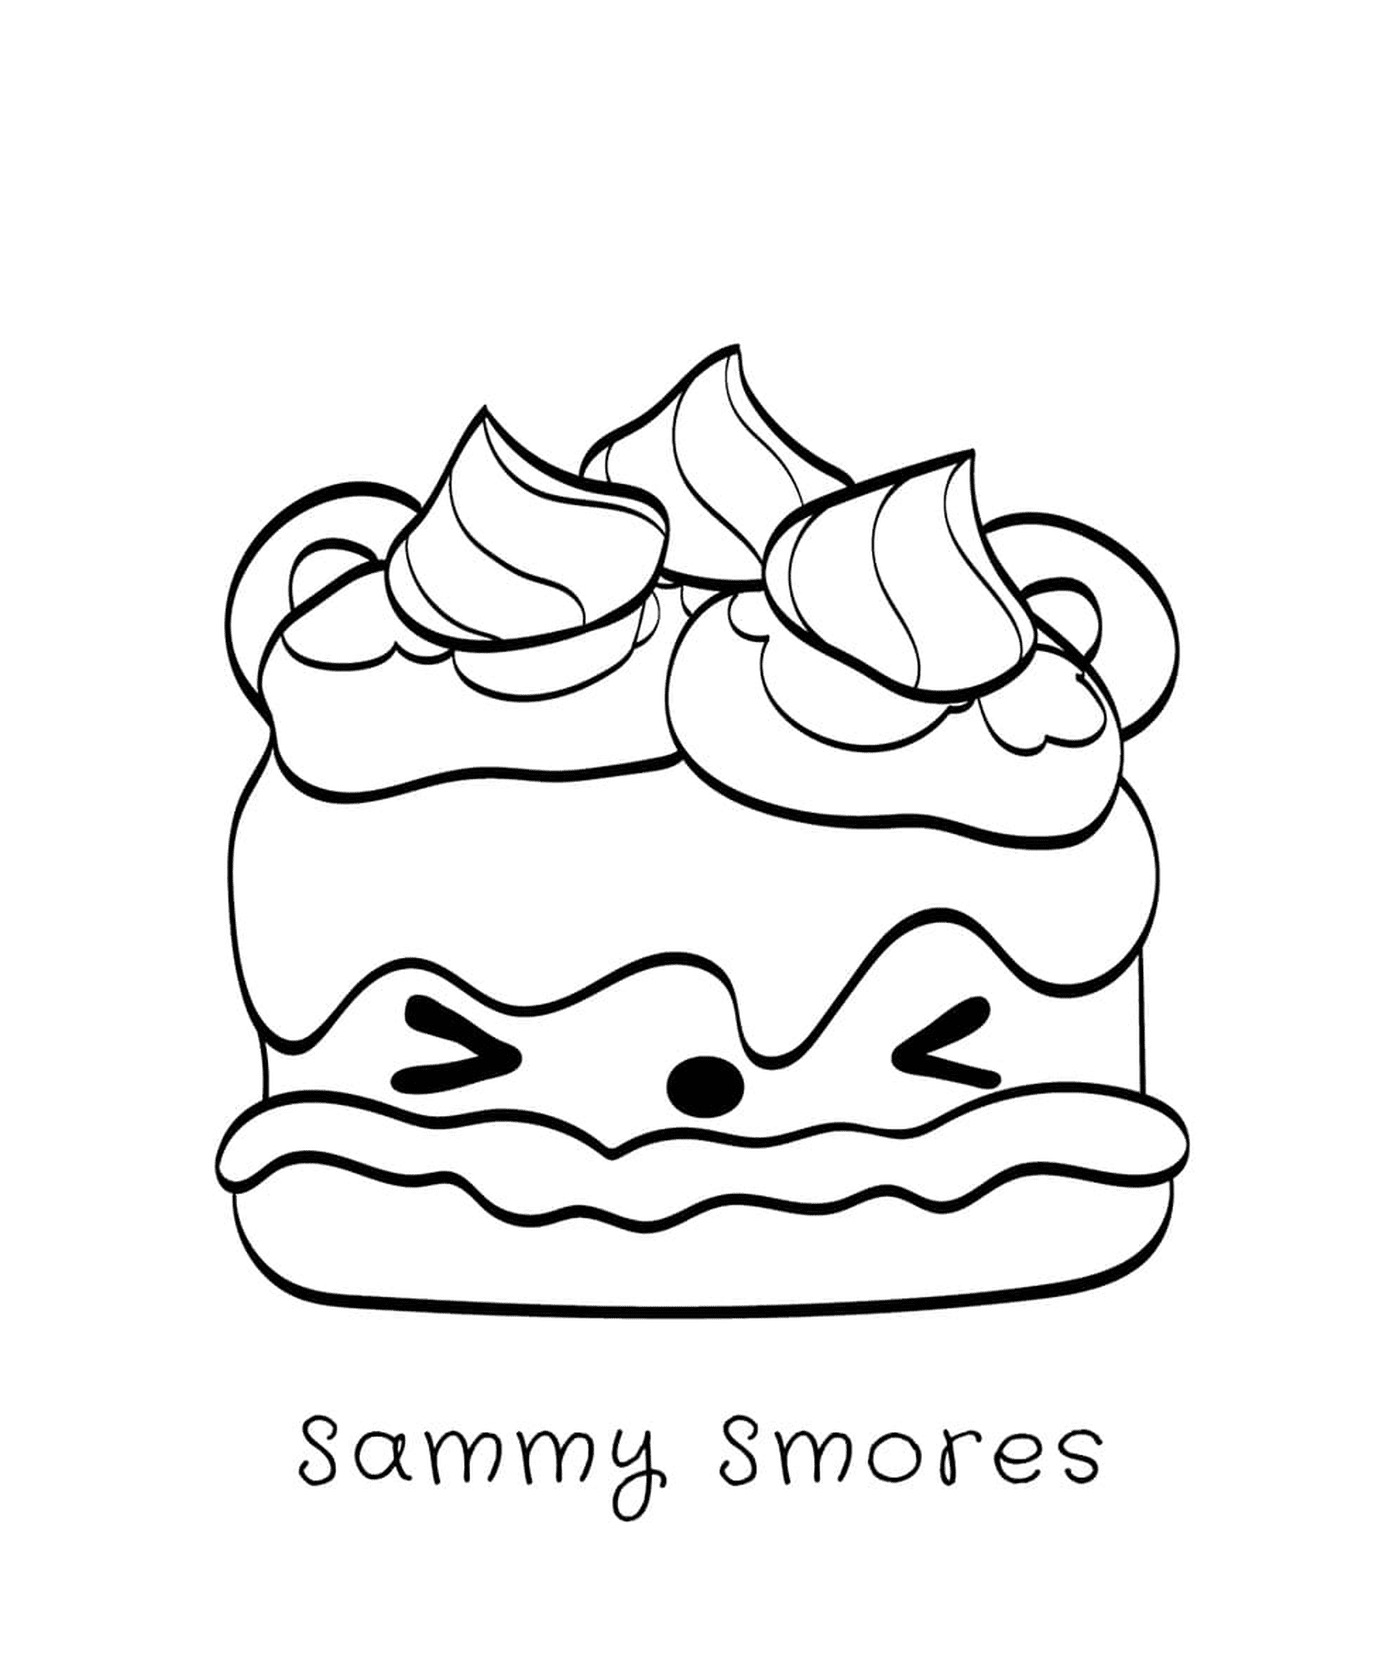  Sammy S'mores, ein Gourmand 